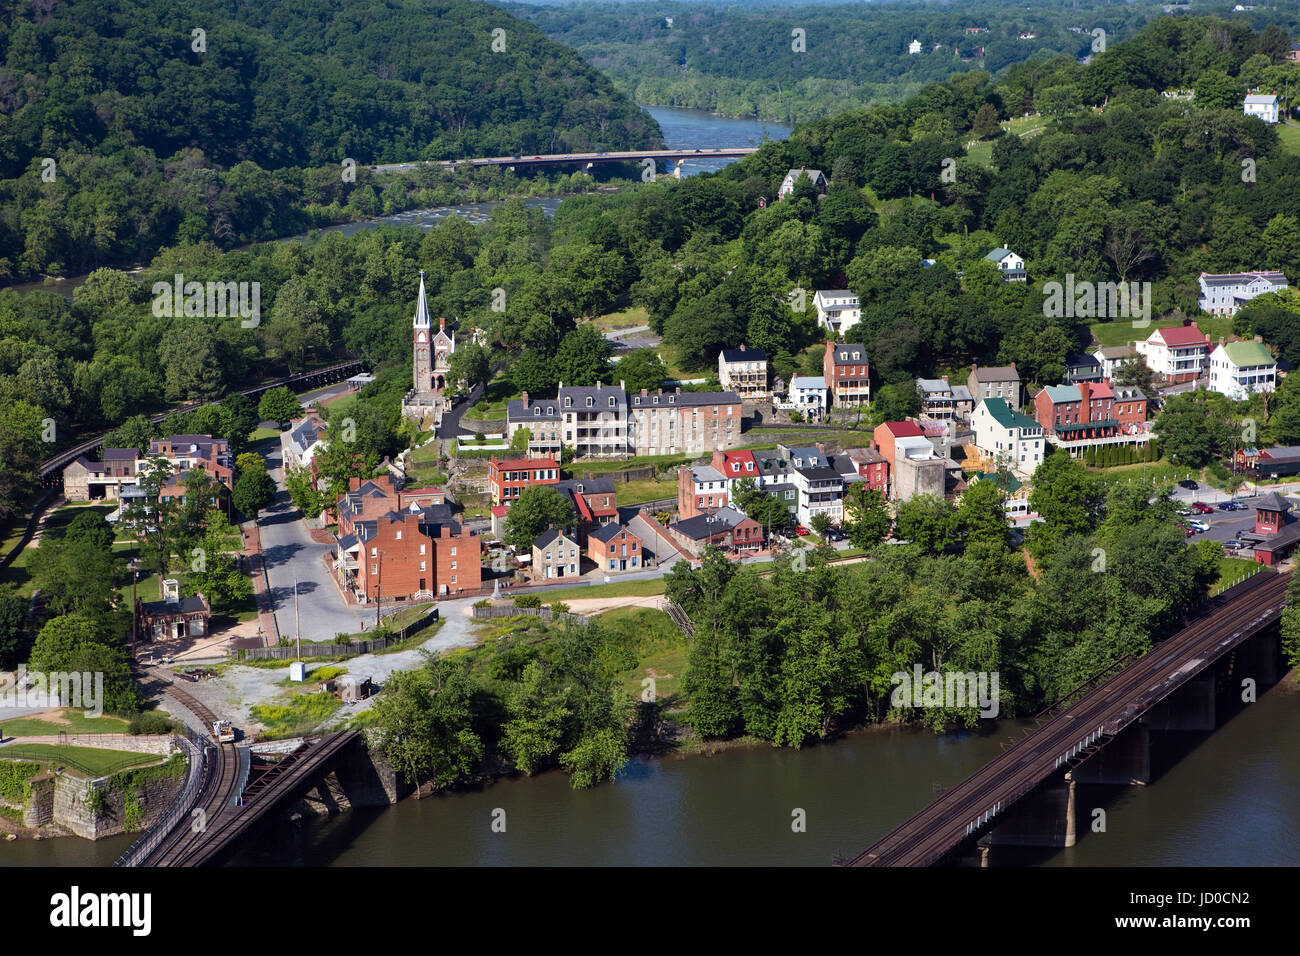 Luftaufnahme von Harpers Ferry, West Virginia, die Harpers Ferry National Historical Park umfasst, befindet sich zwischen dem Potomac River und Stockfoto